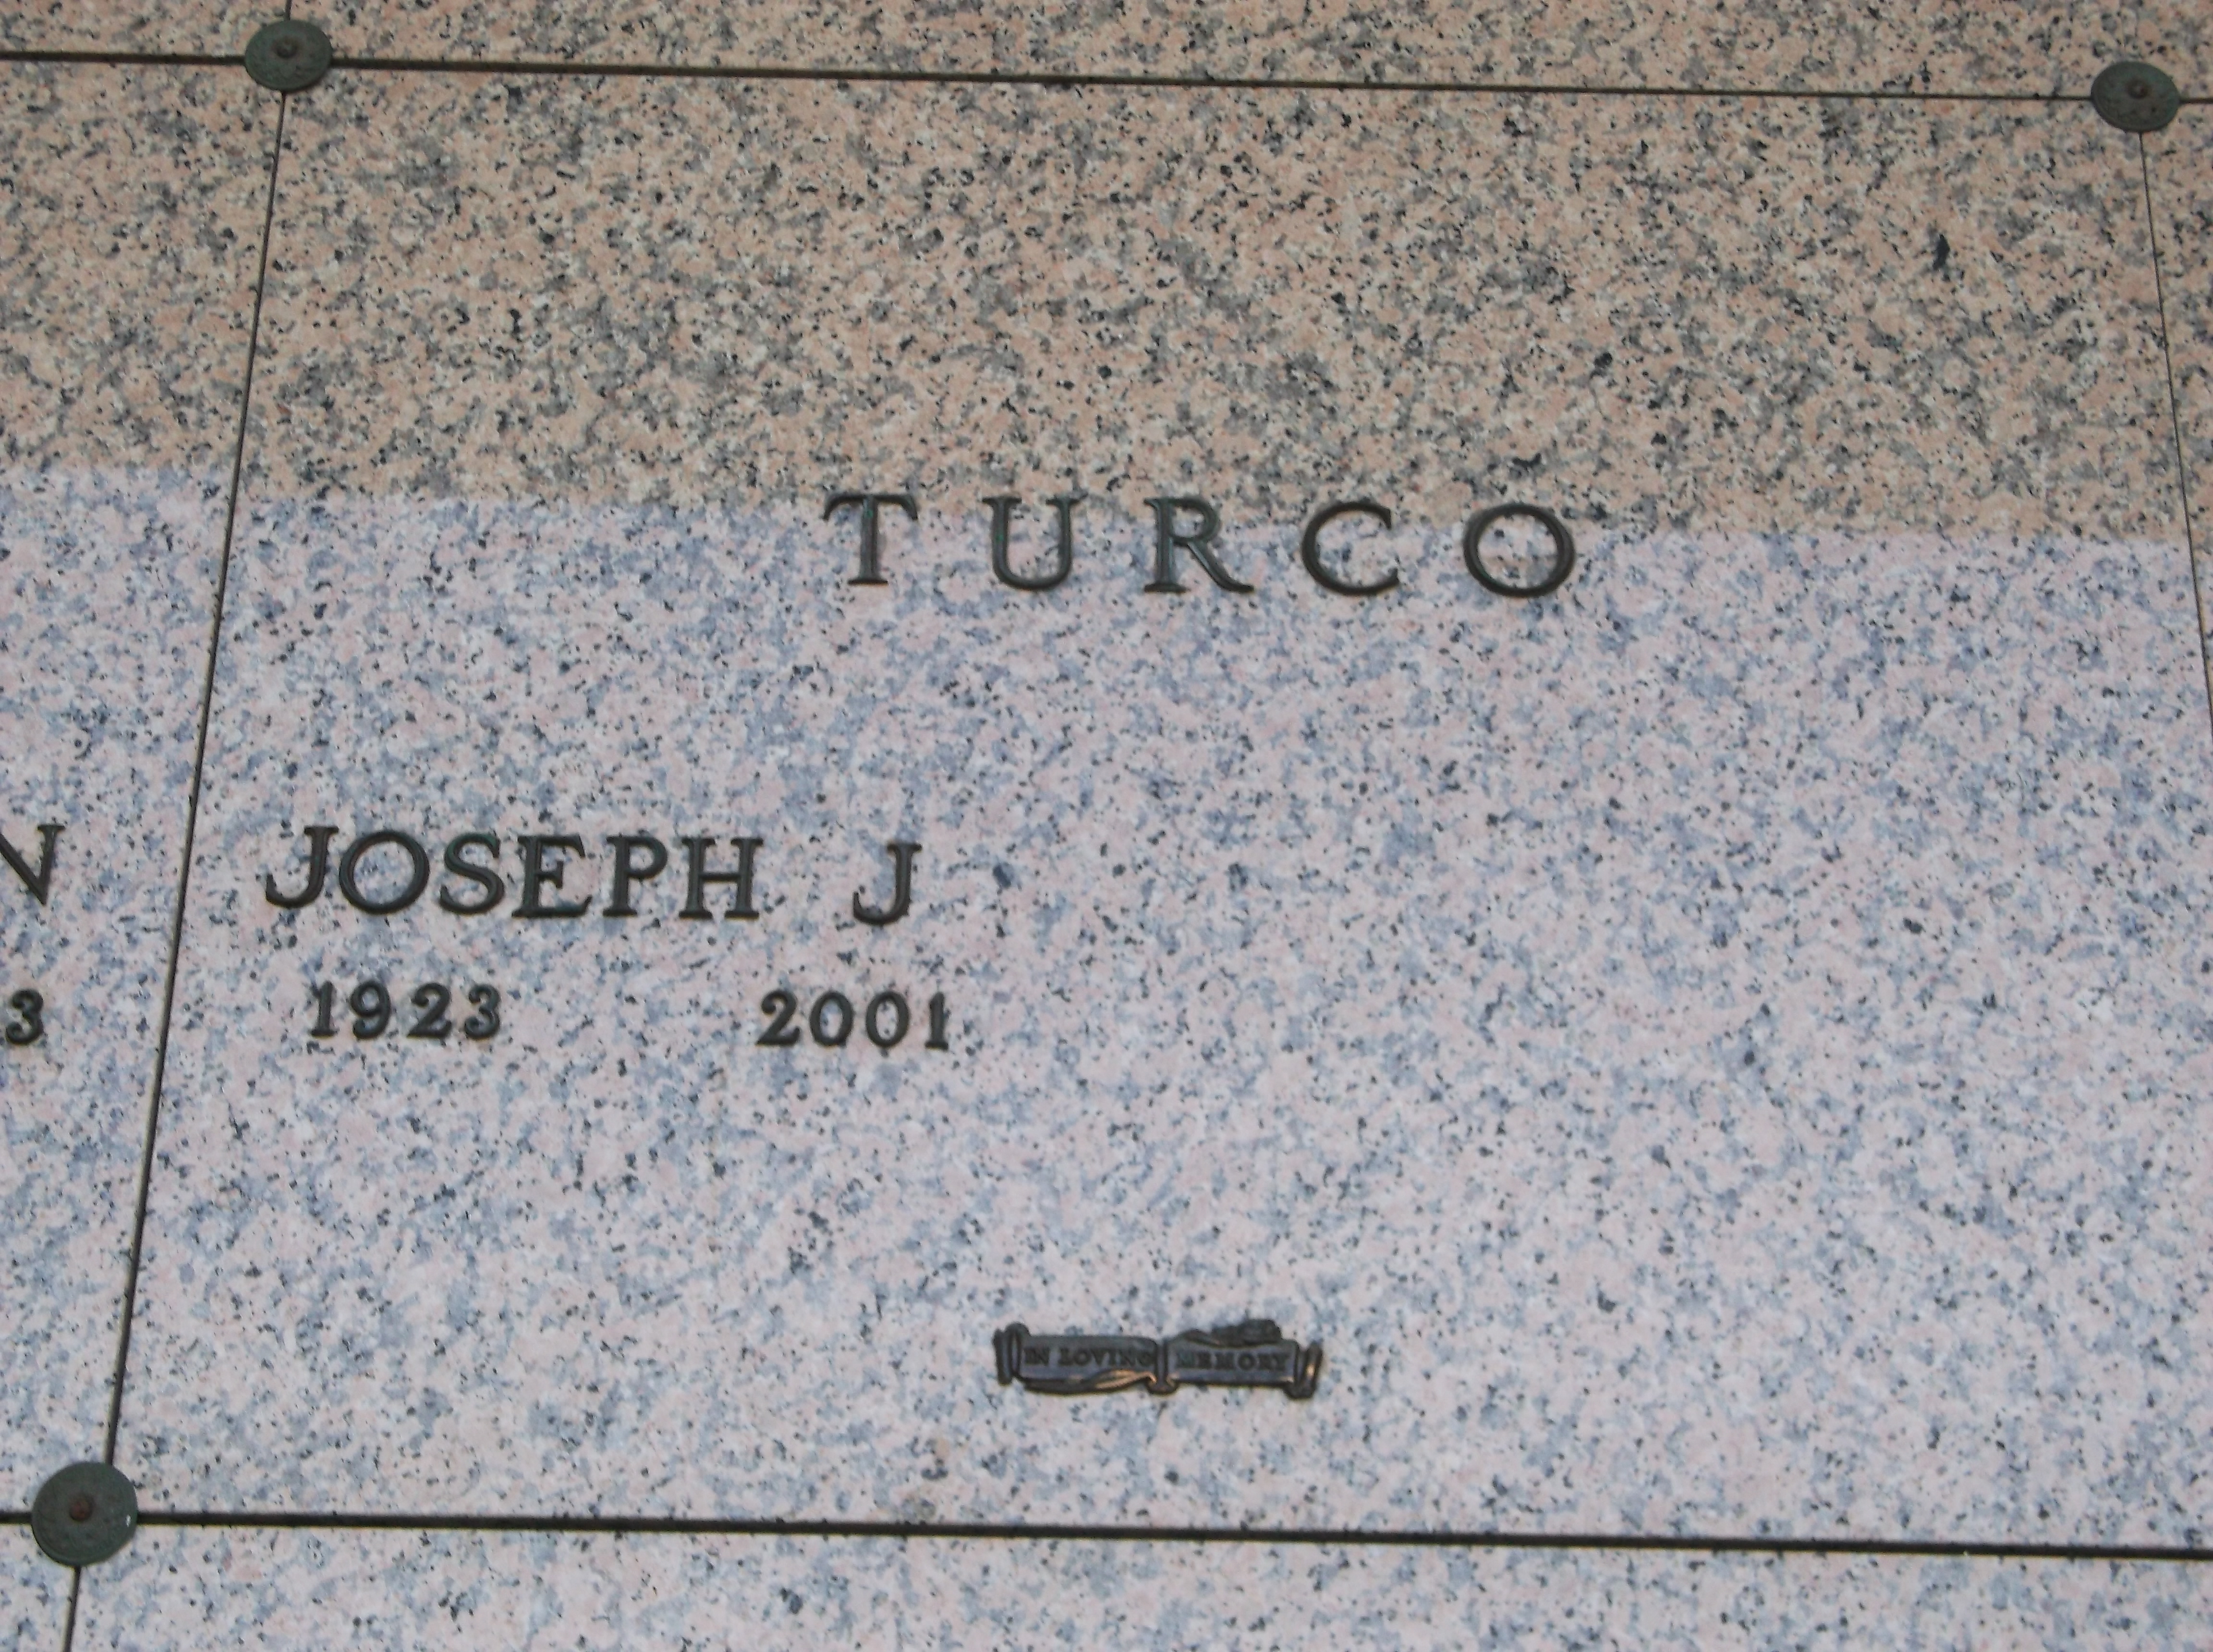 Joseph J Turco